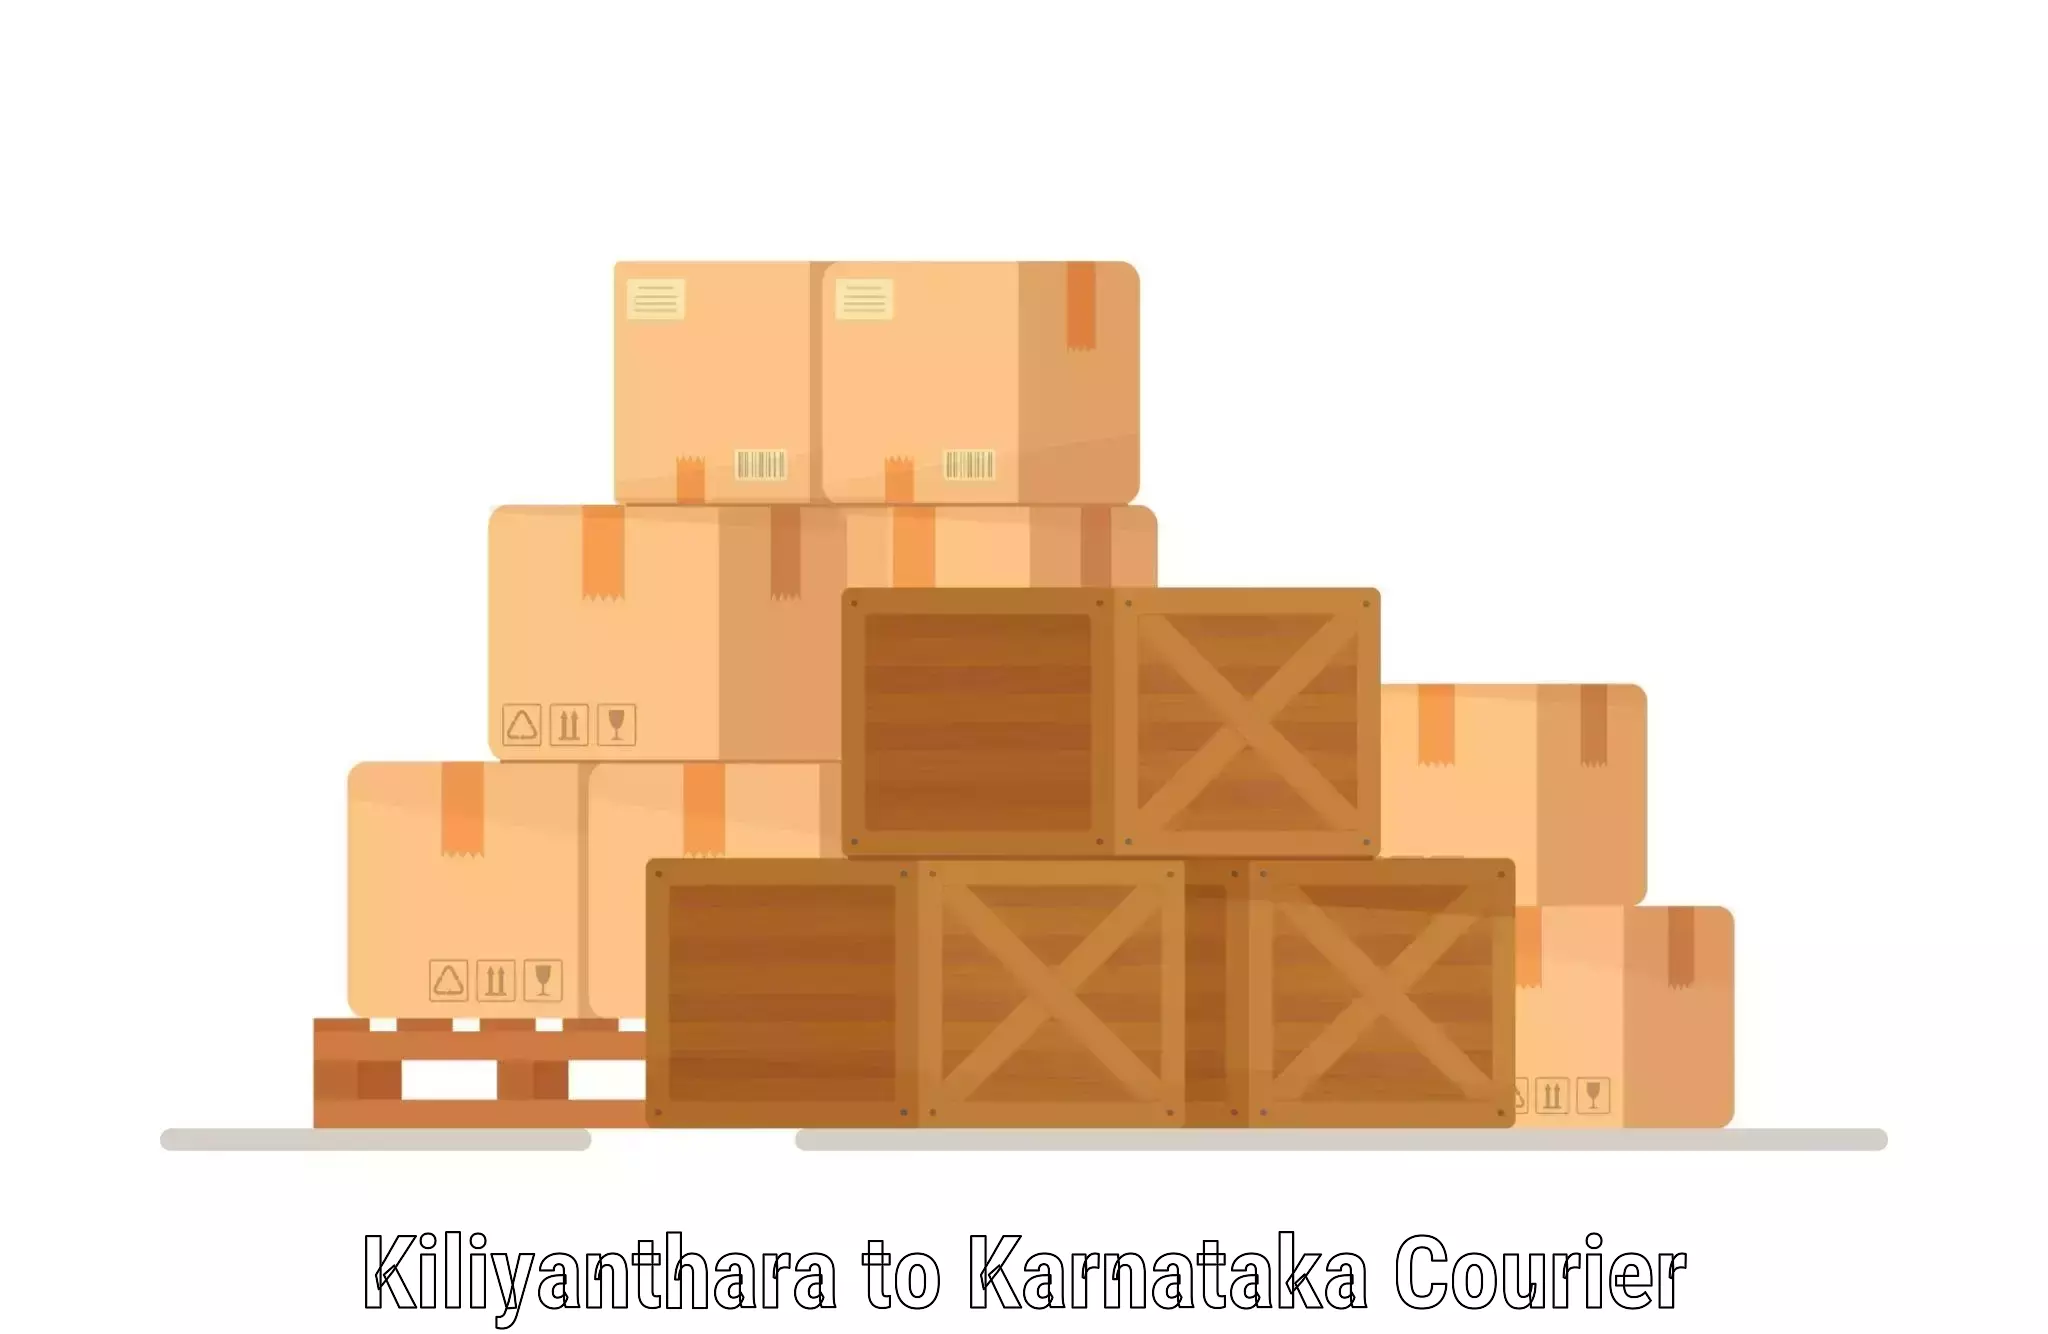 Local courier options Kiliyanthara to Gangavathi